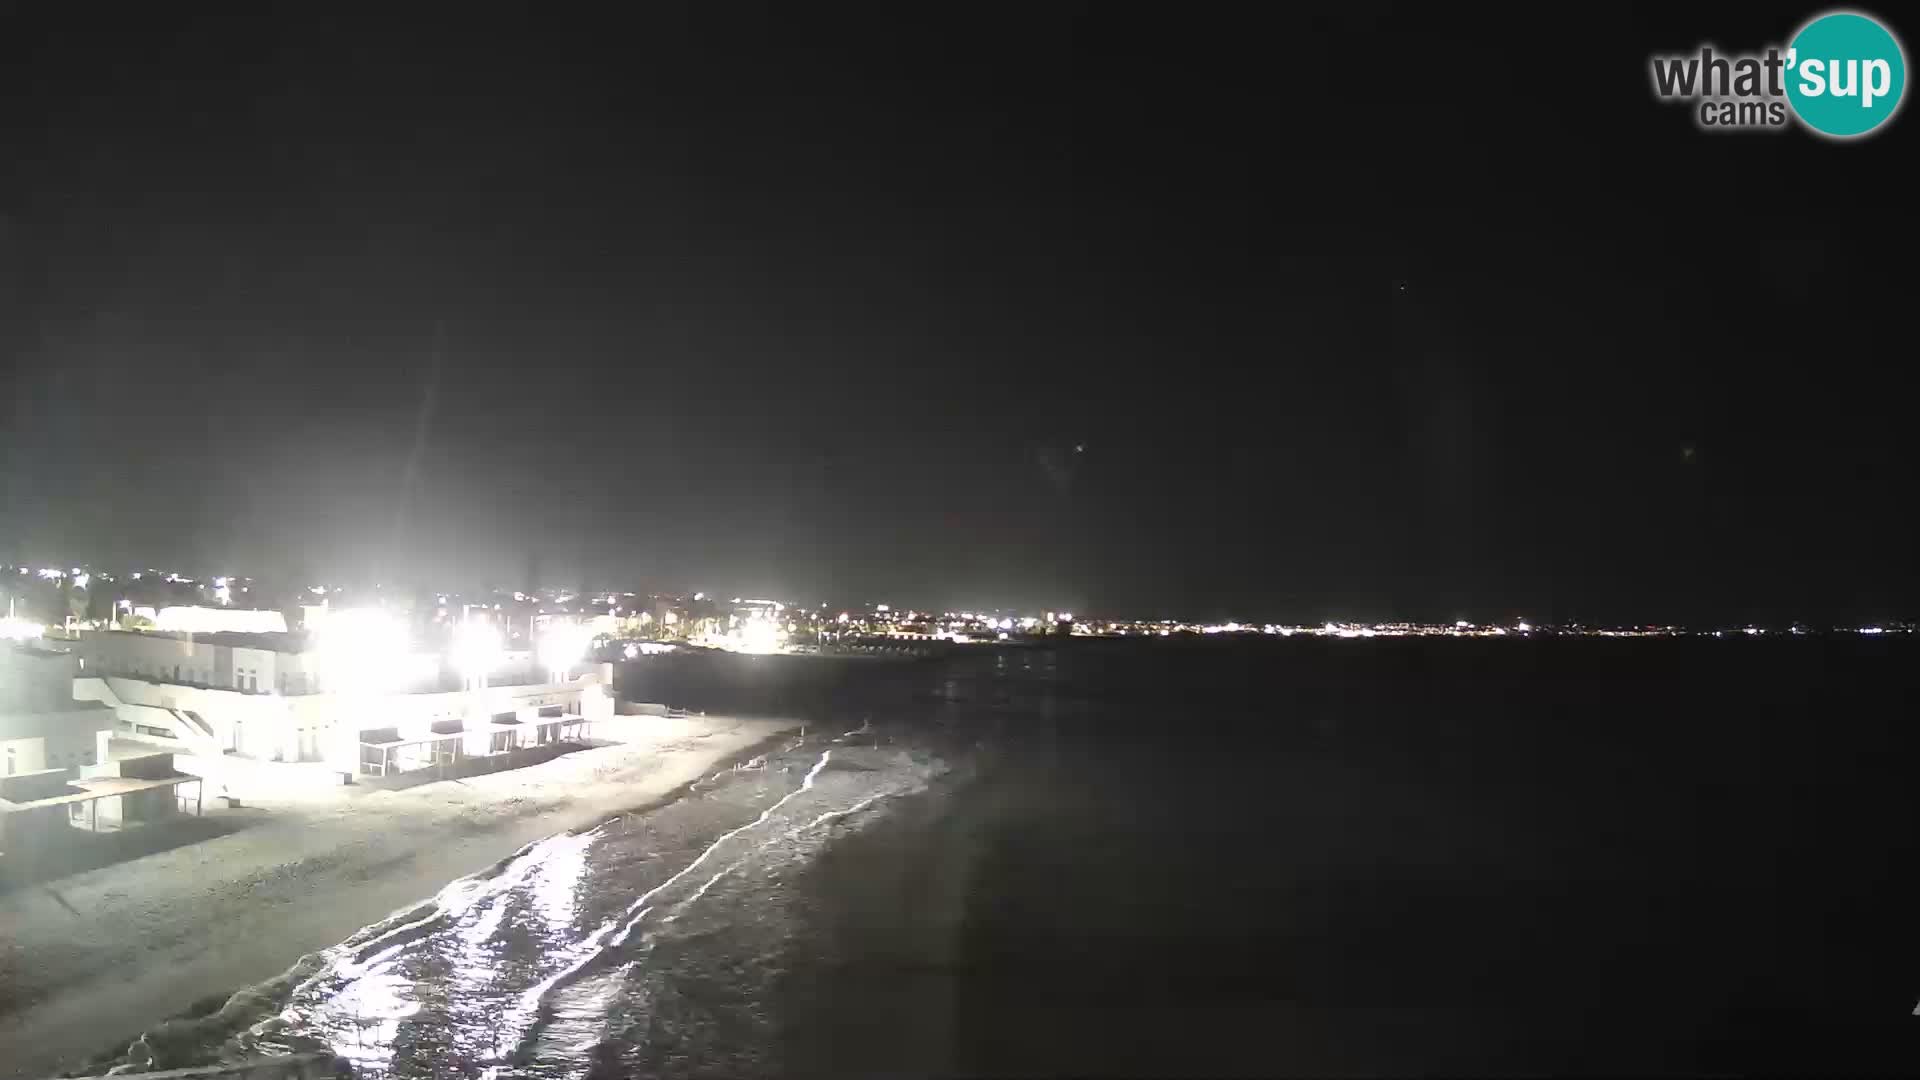 Live Webcam Golfo di Cagliari – Spiaggia del Poetto – Sardegna